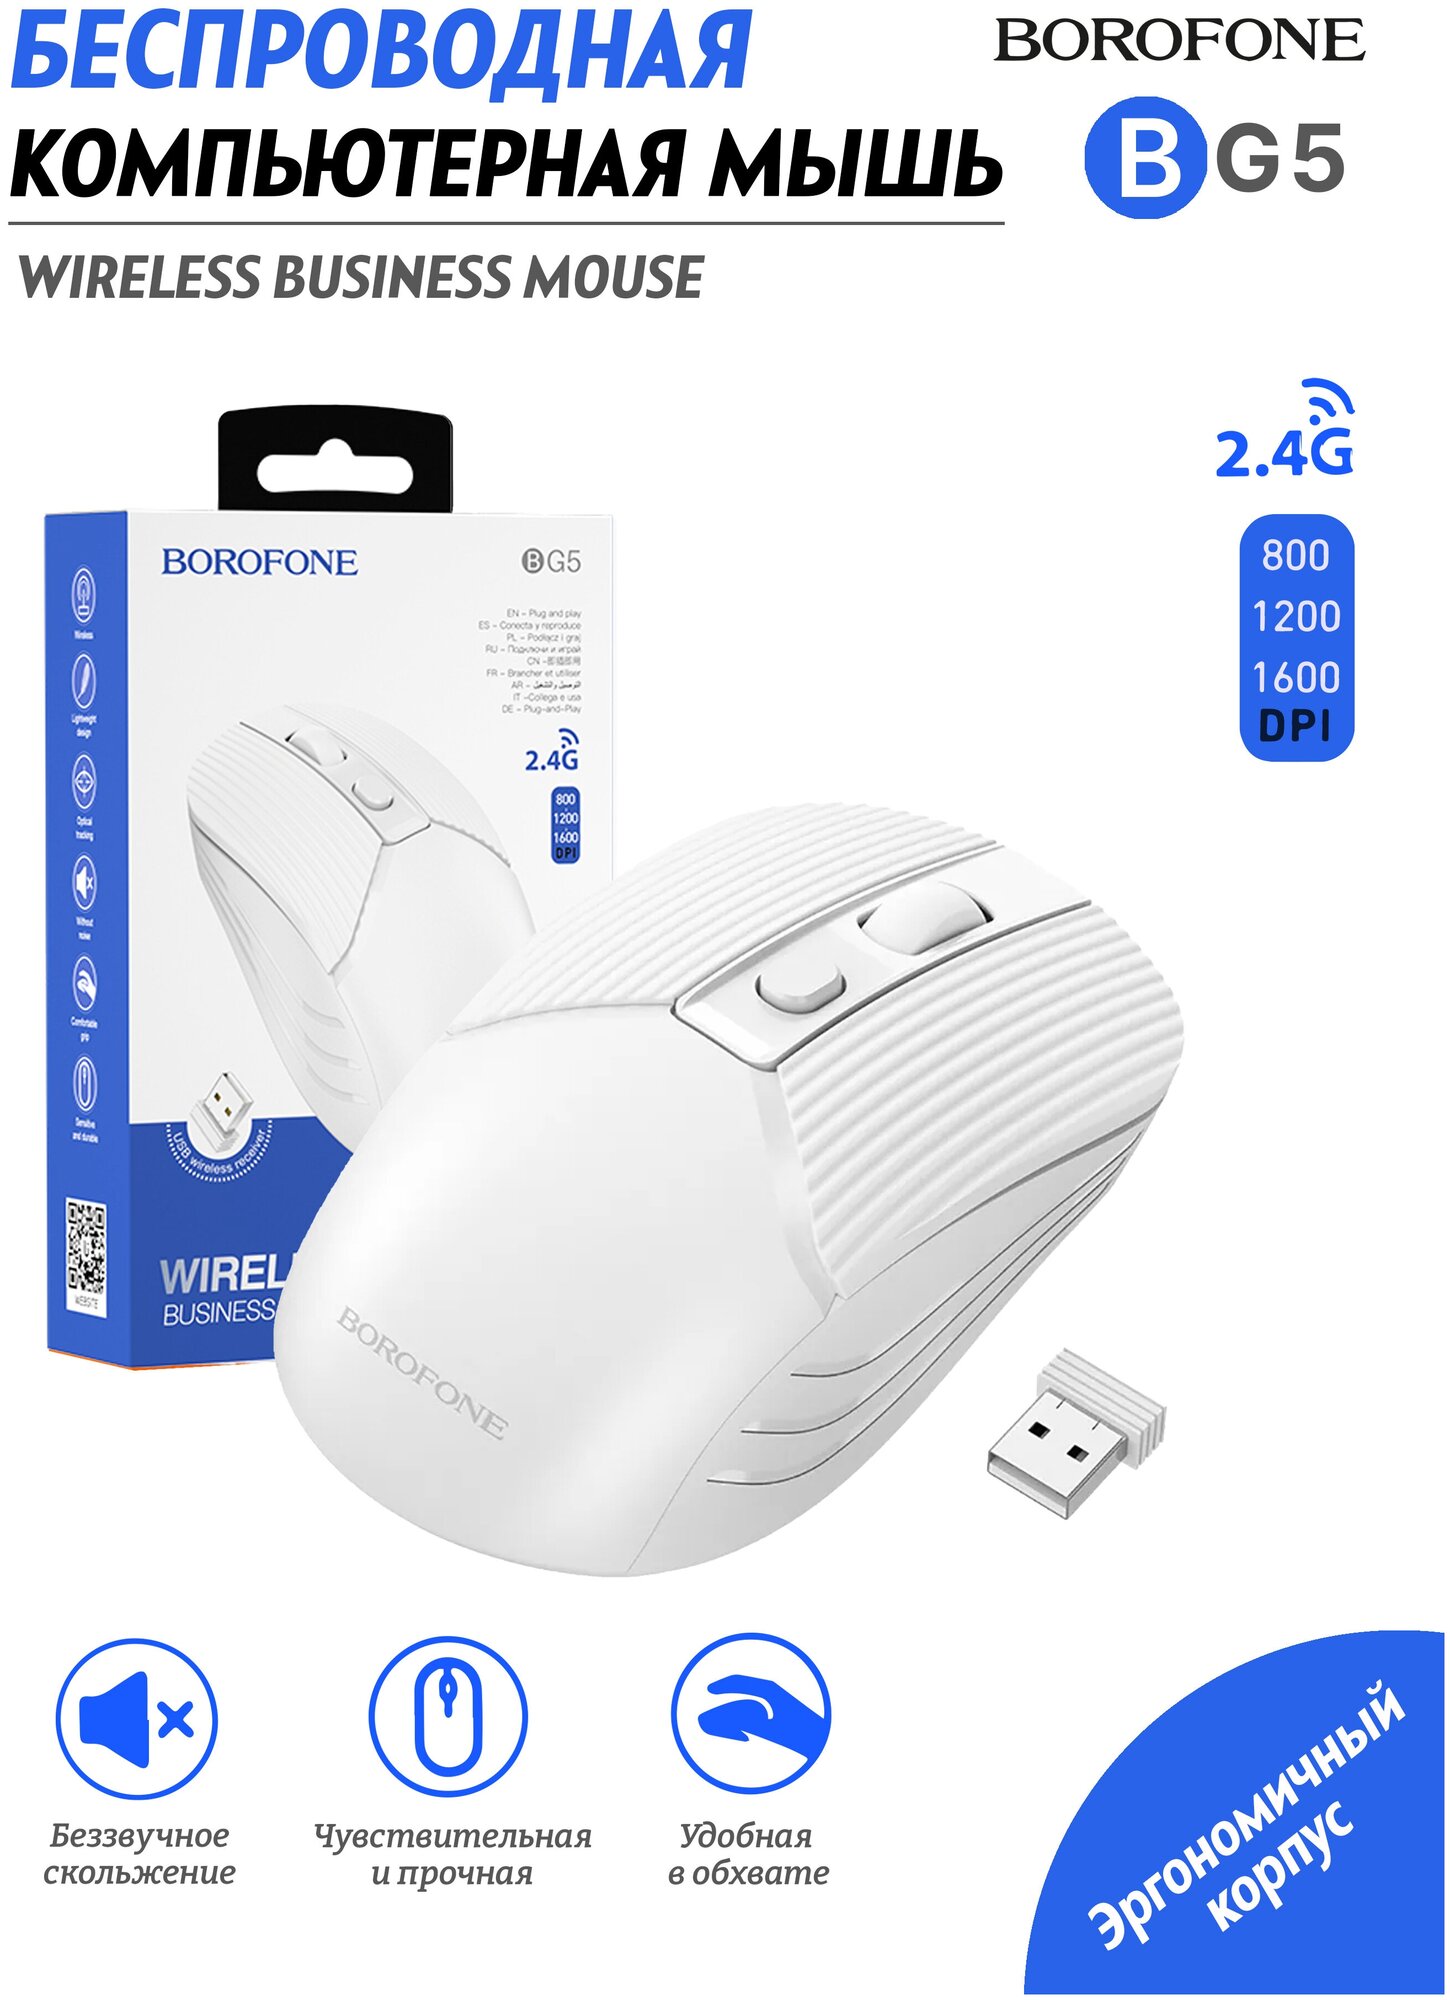 Мышь Borofone 2.4G business wireless mouse компьютерная беспроводная игровая Bluetooth DPI: 800-1200-1600 черная